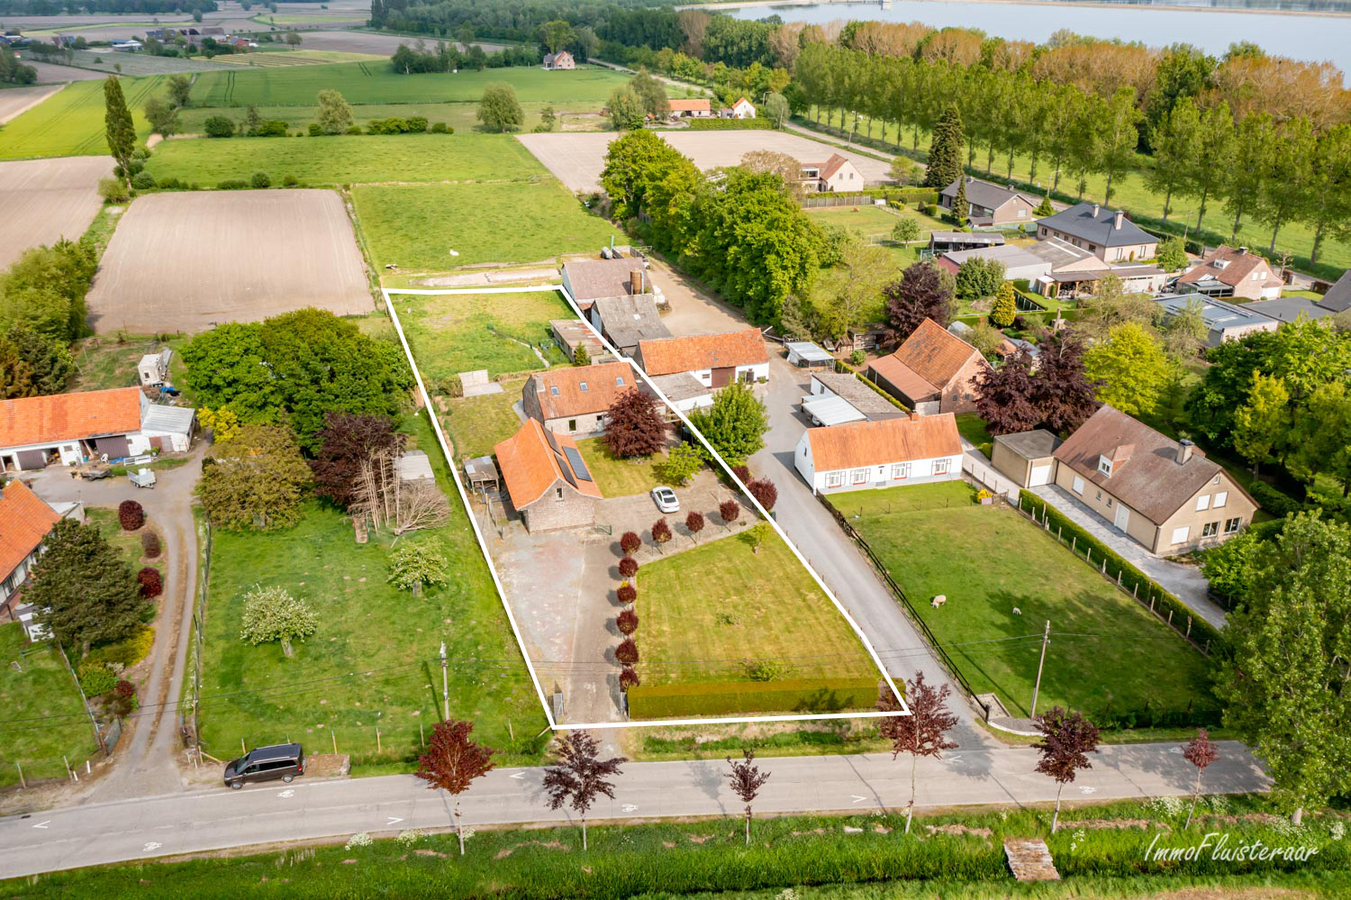 Property for sale in Sleidinge